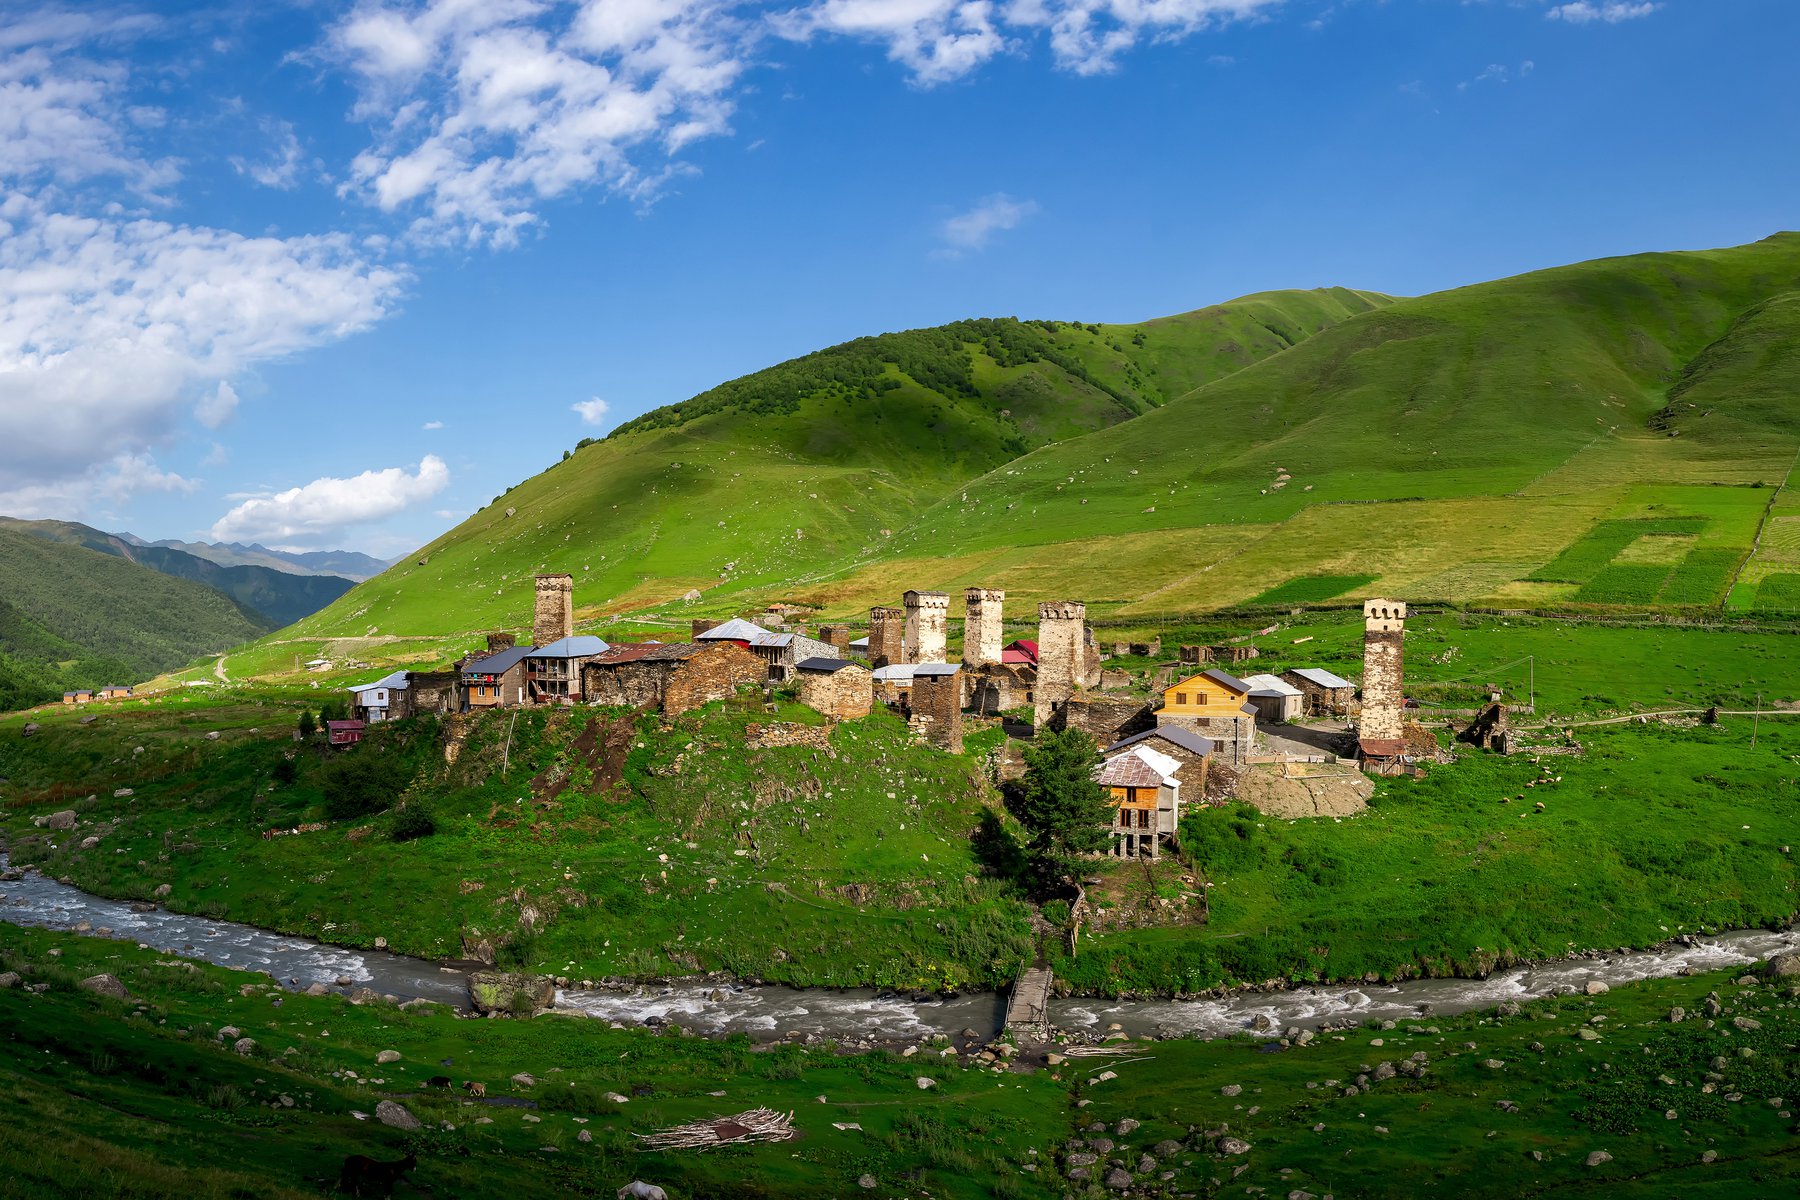 Du besöker den bedårande byn Ushguli under resan i Georgien